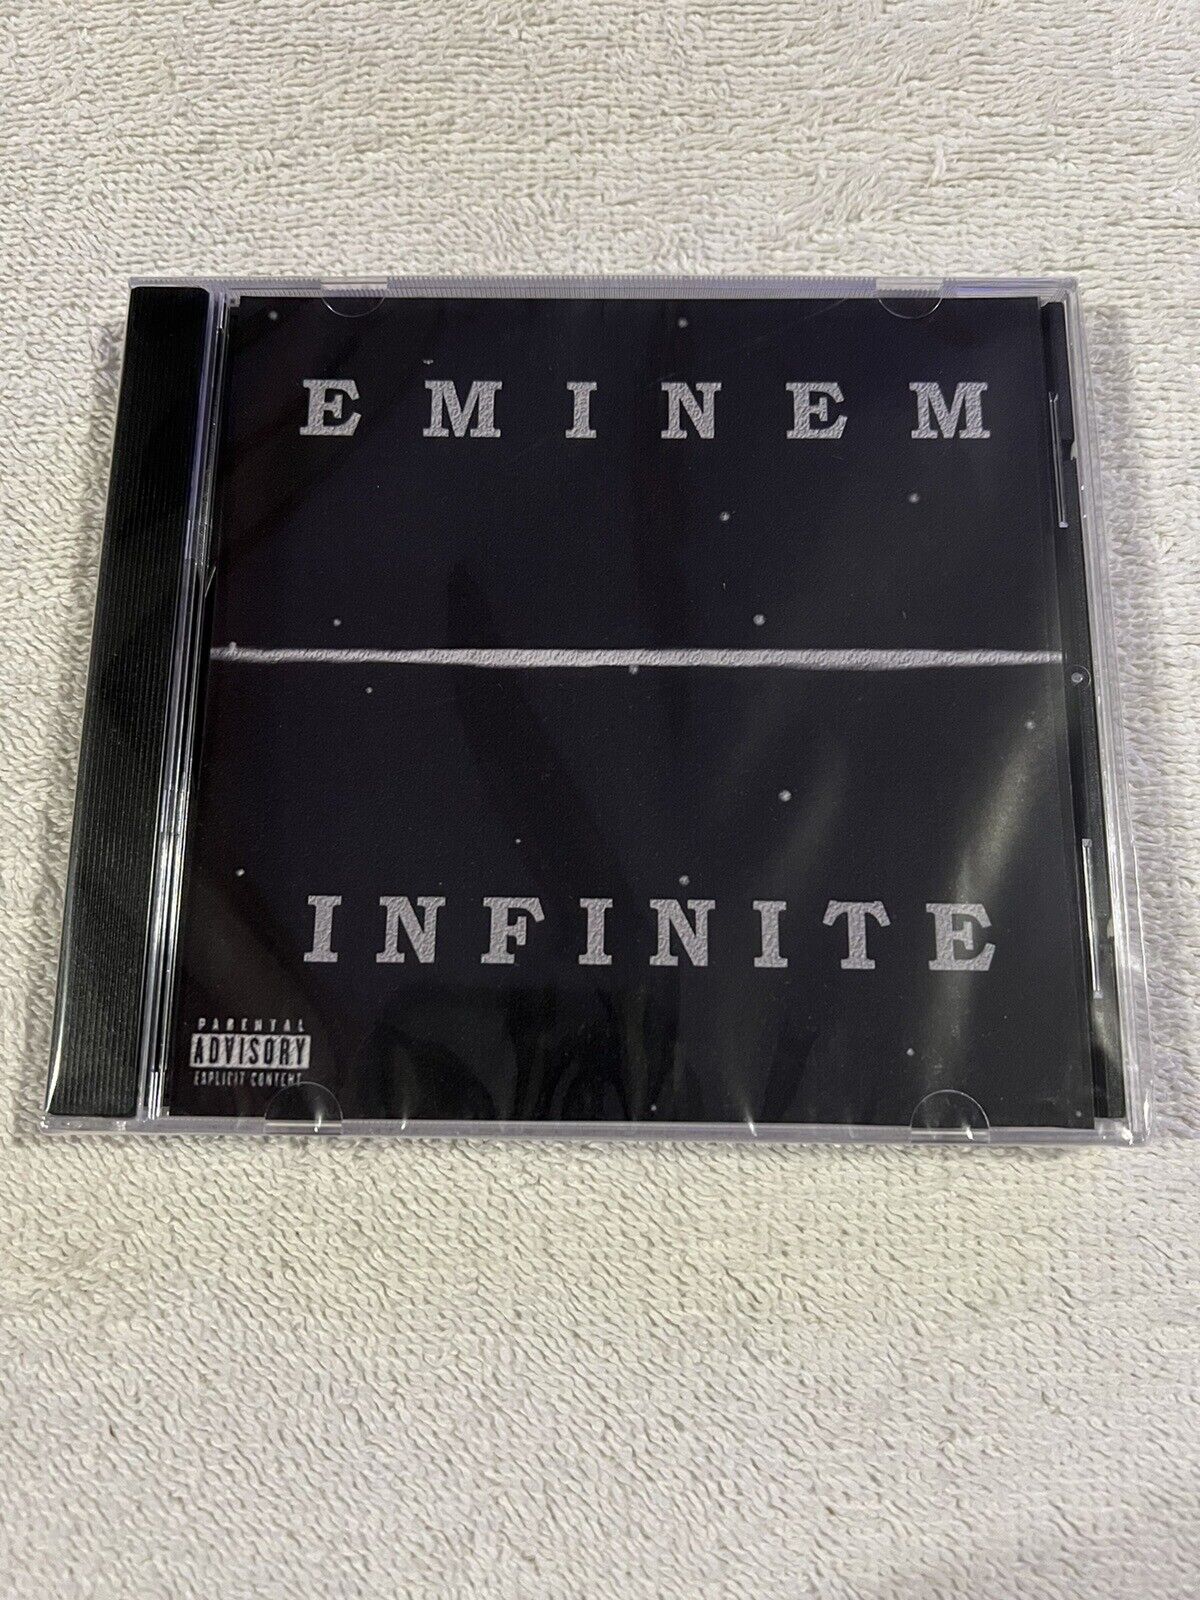 Eminem Infinite CD Explicit Lyrics 1996 Debut Album